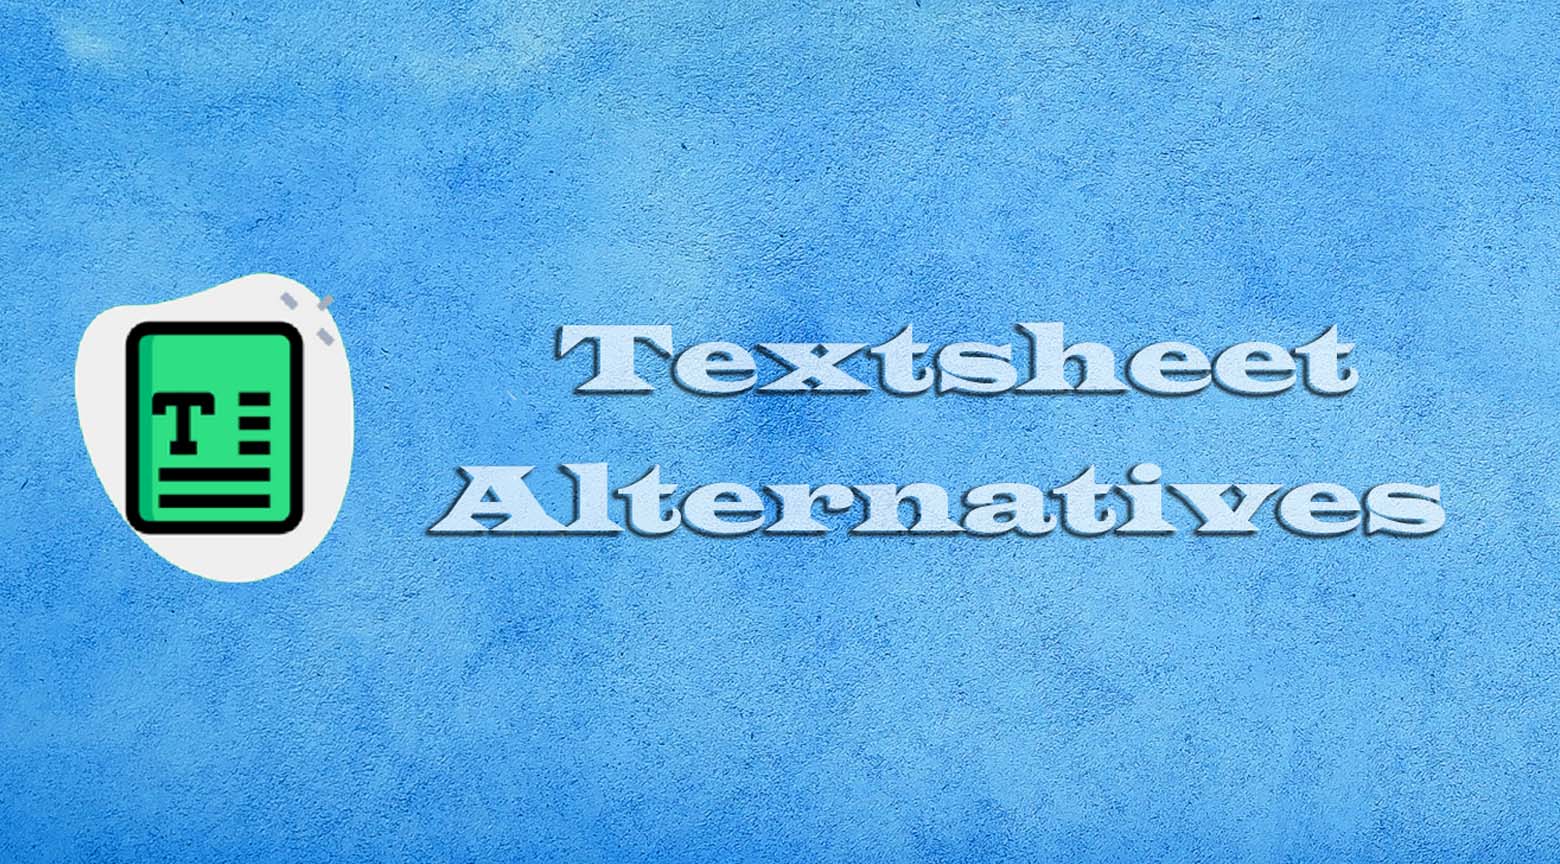 Textsheet Alternatives